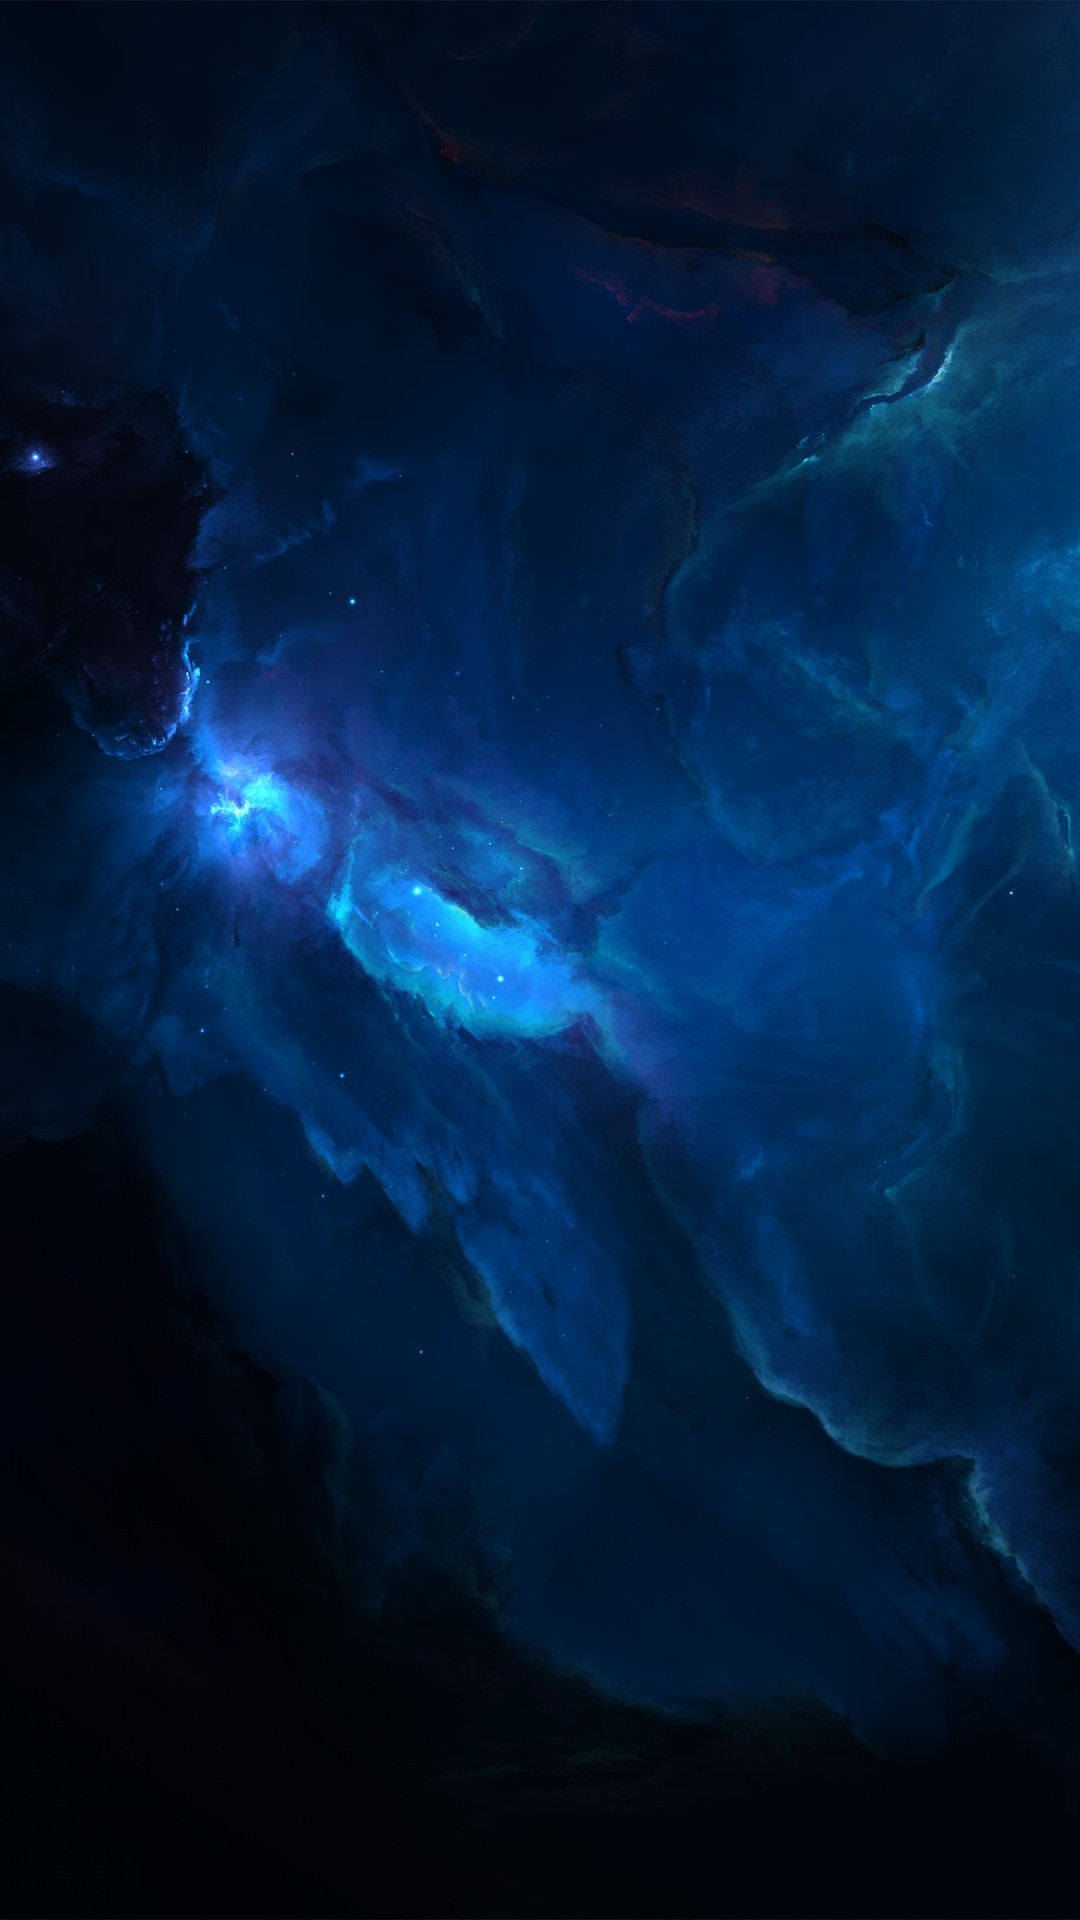 nexus 5x fond d'écran hd,bleu,ciel,bleu électrique,l'eau,atmosphère